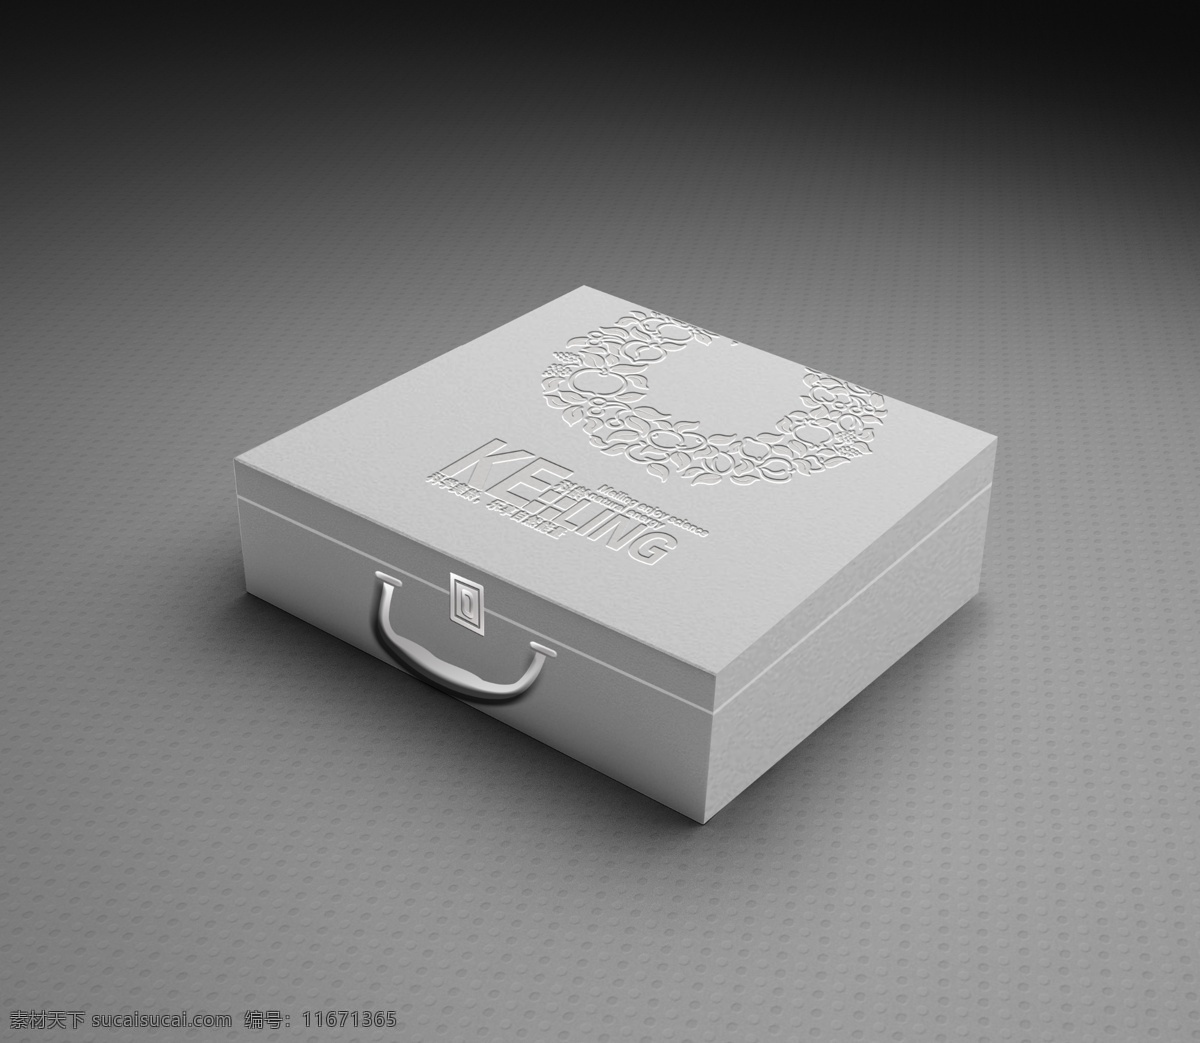 高档 包装盒 效果图 压印 立体效果 花纹 包装设计